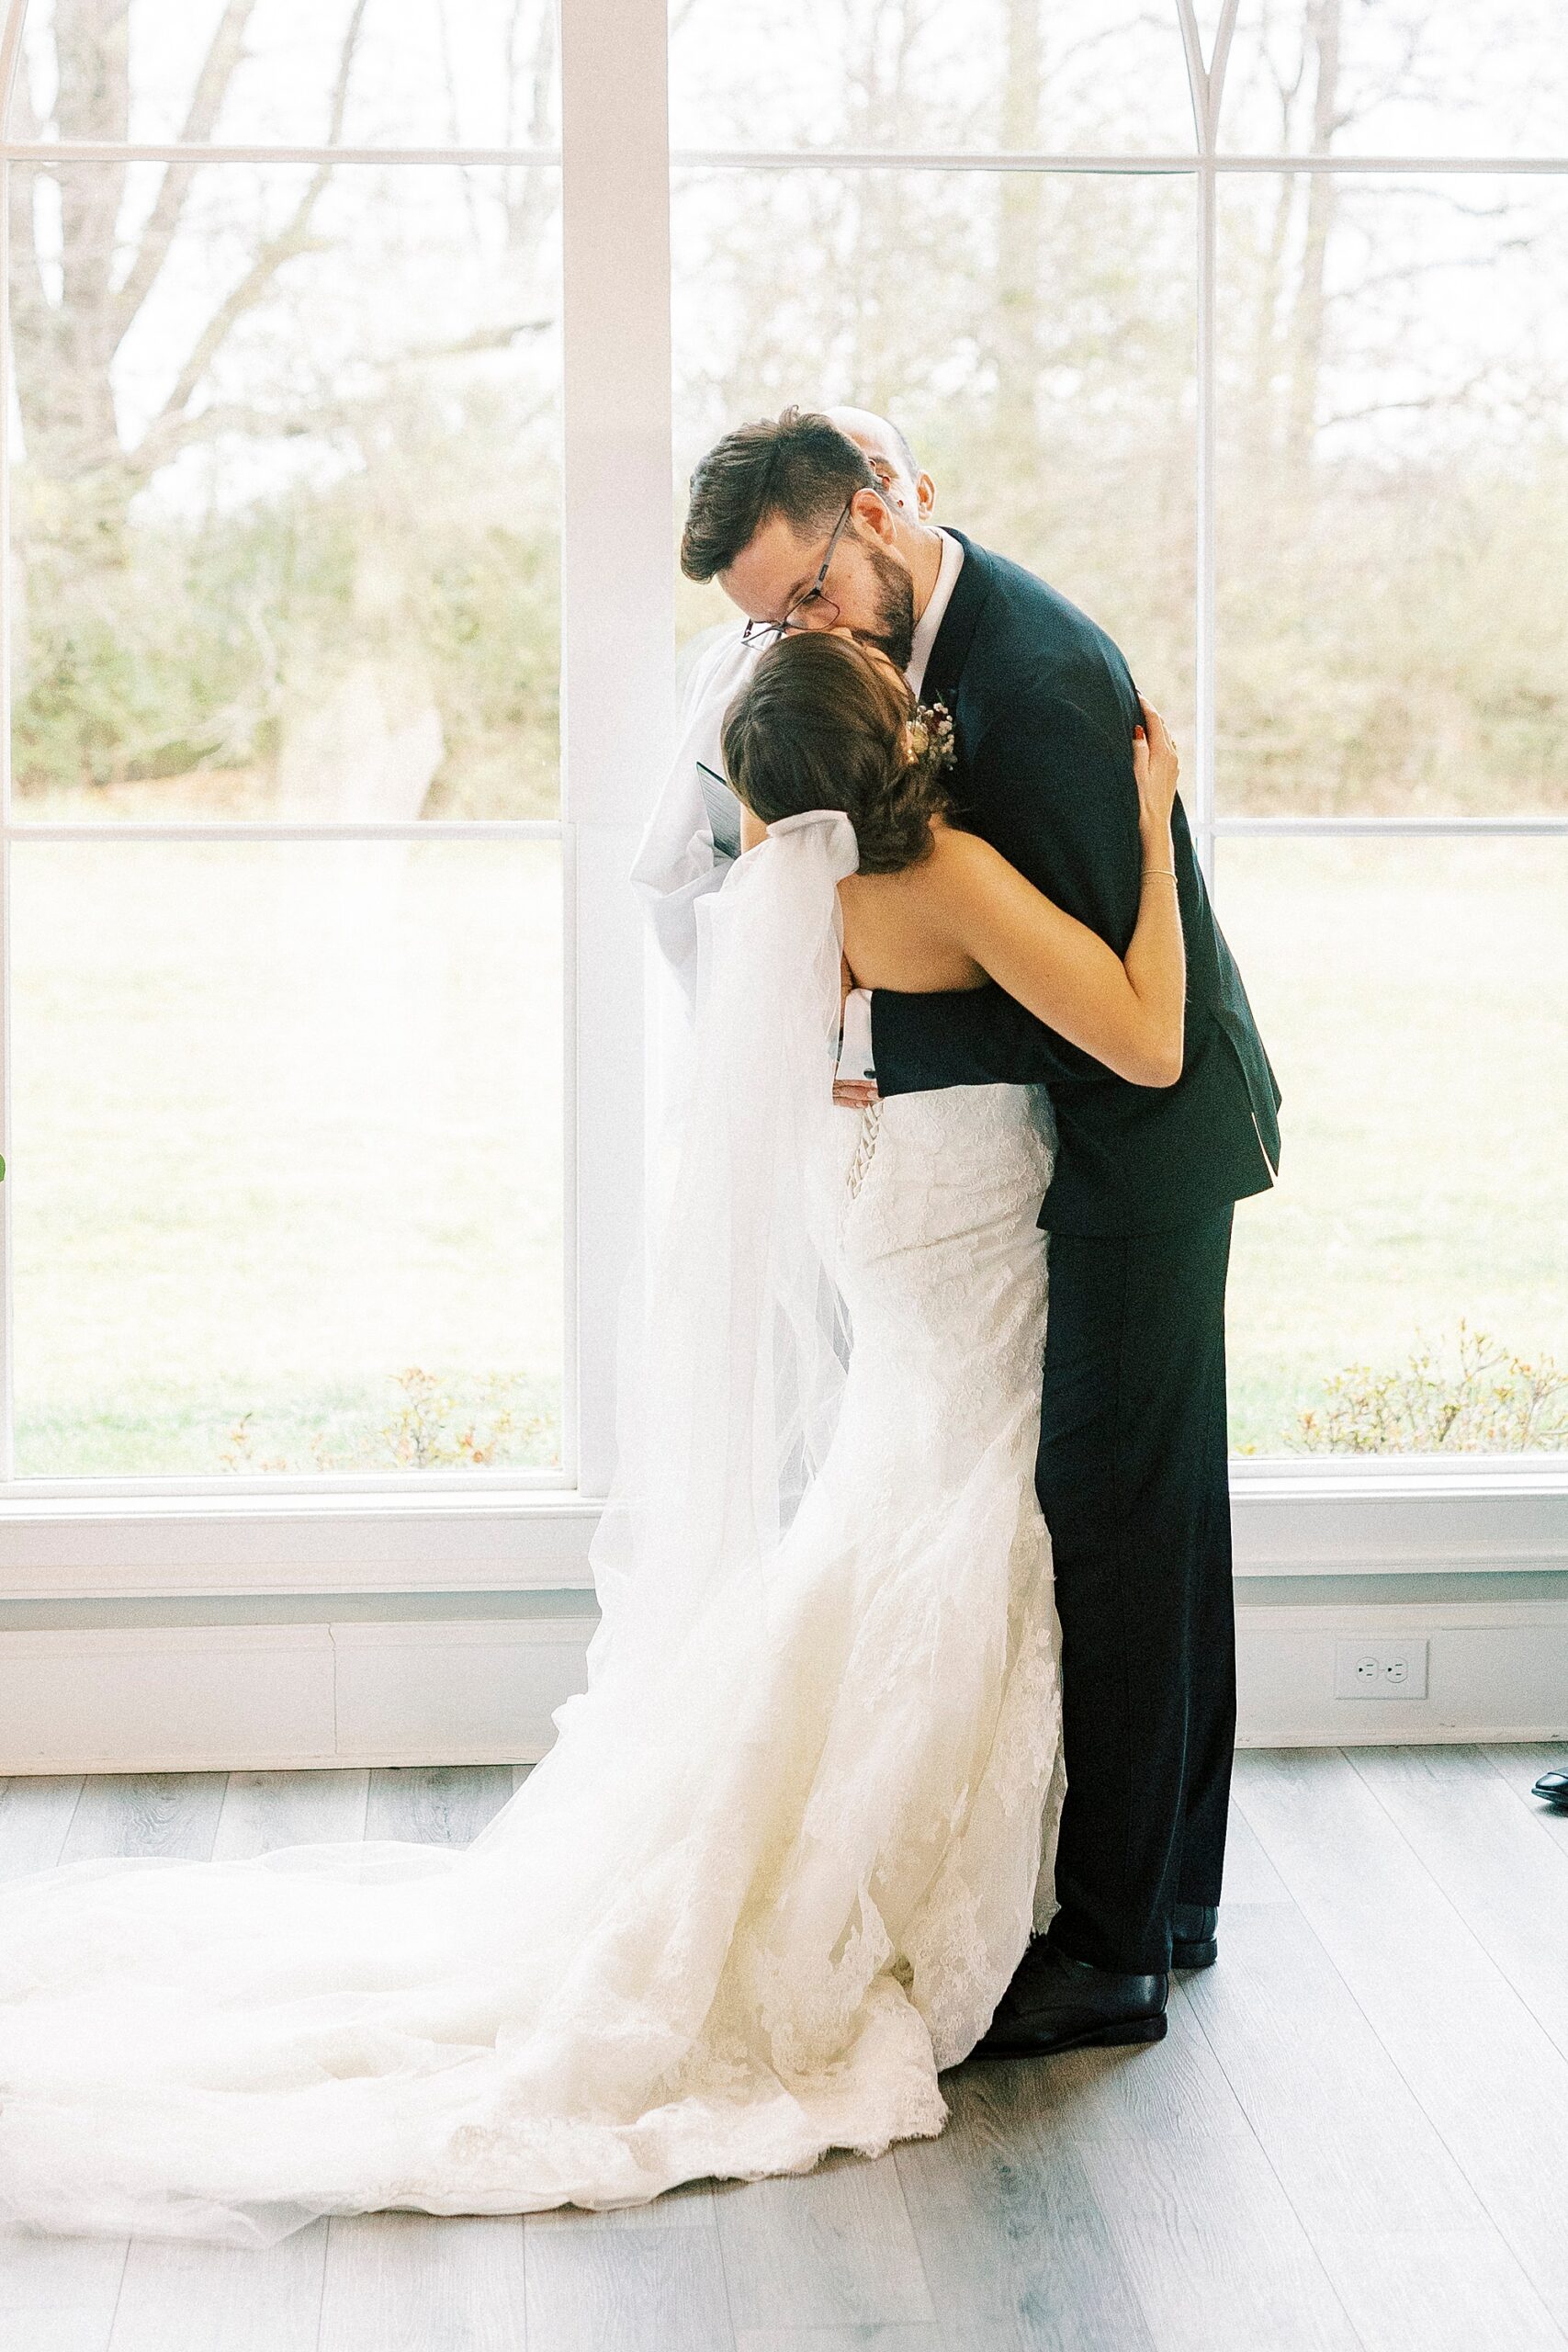 newlyweds kiss by big window for Chickadee Hill Farms wedding ceremony